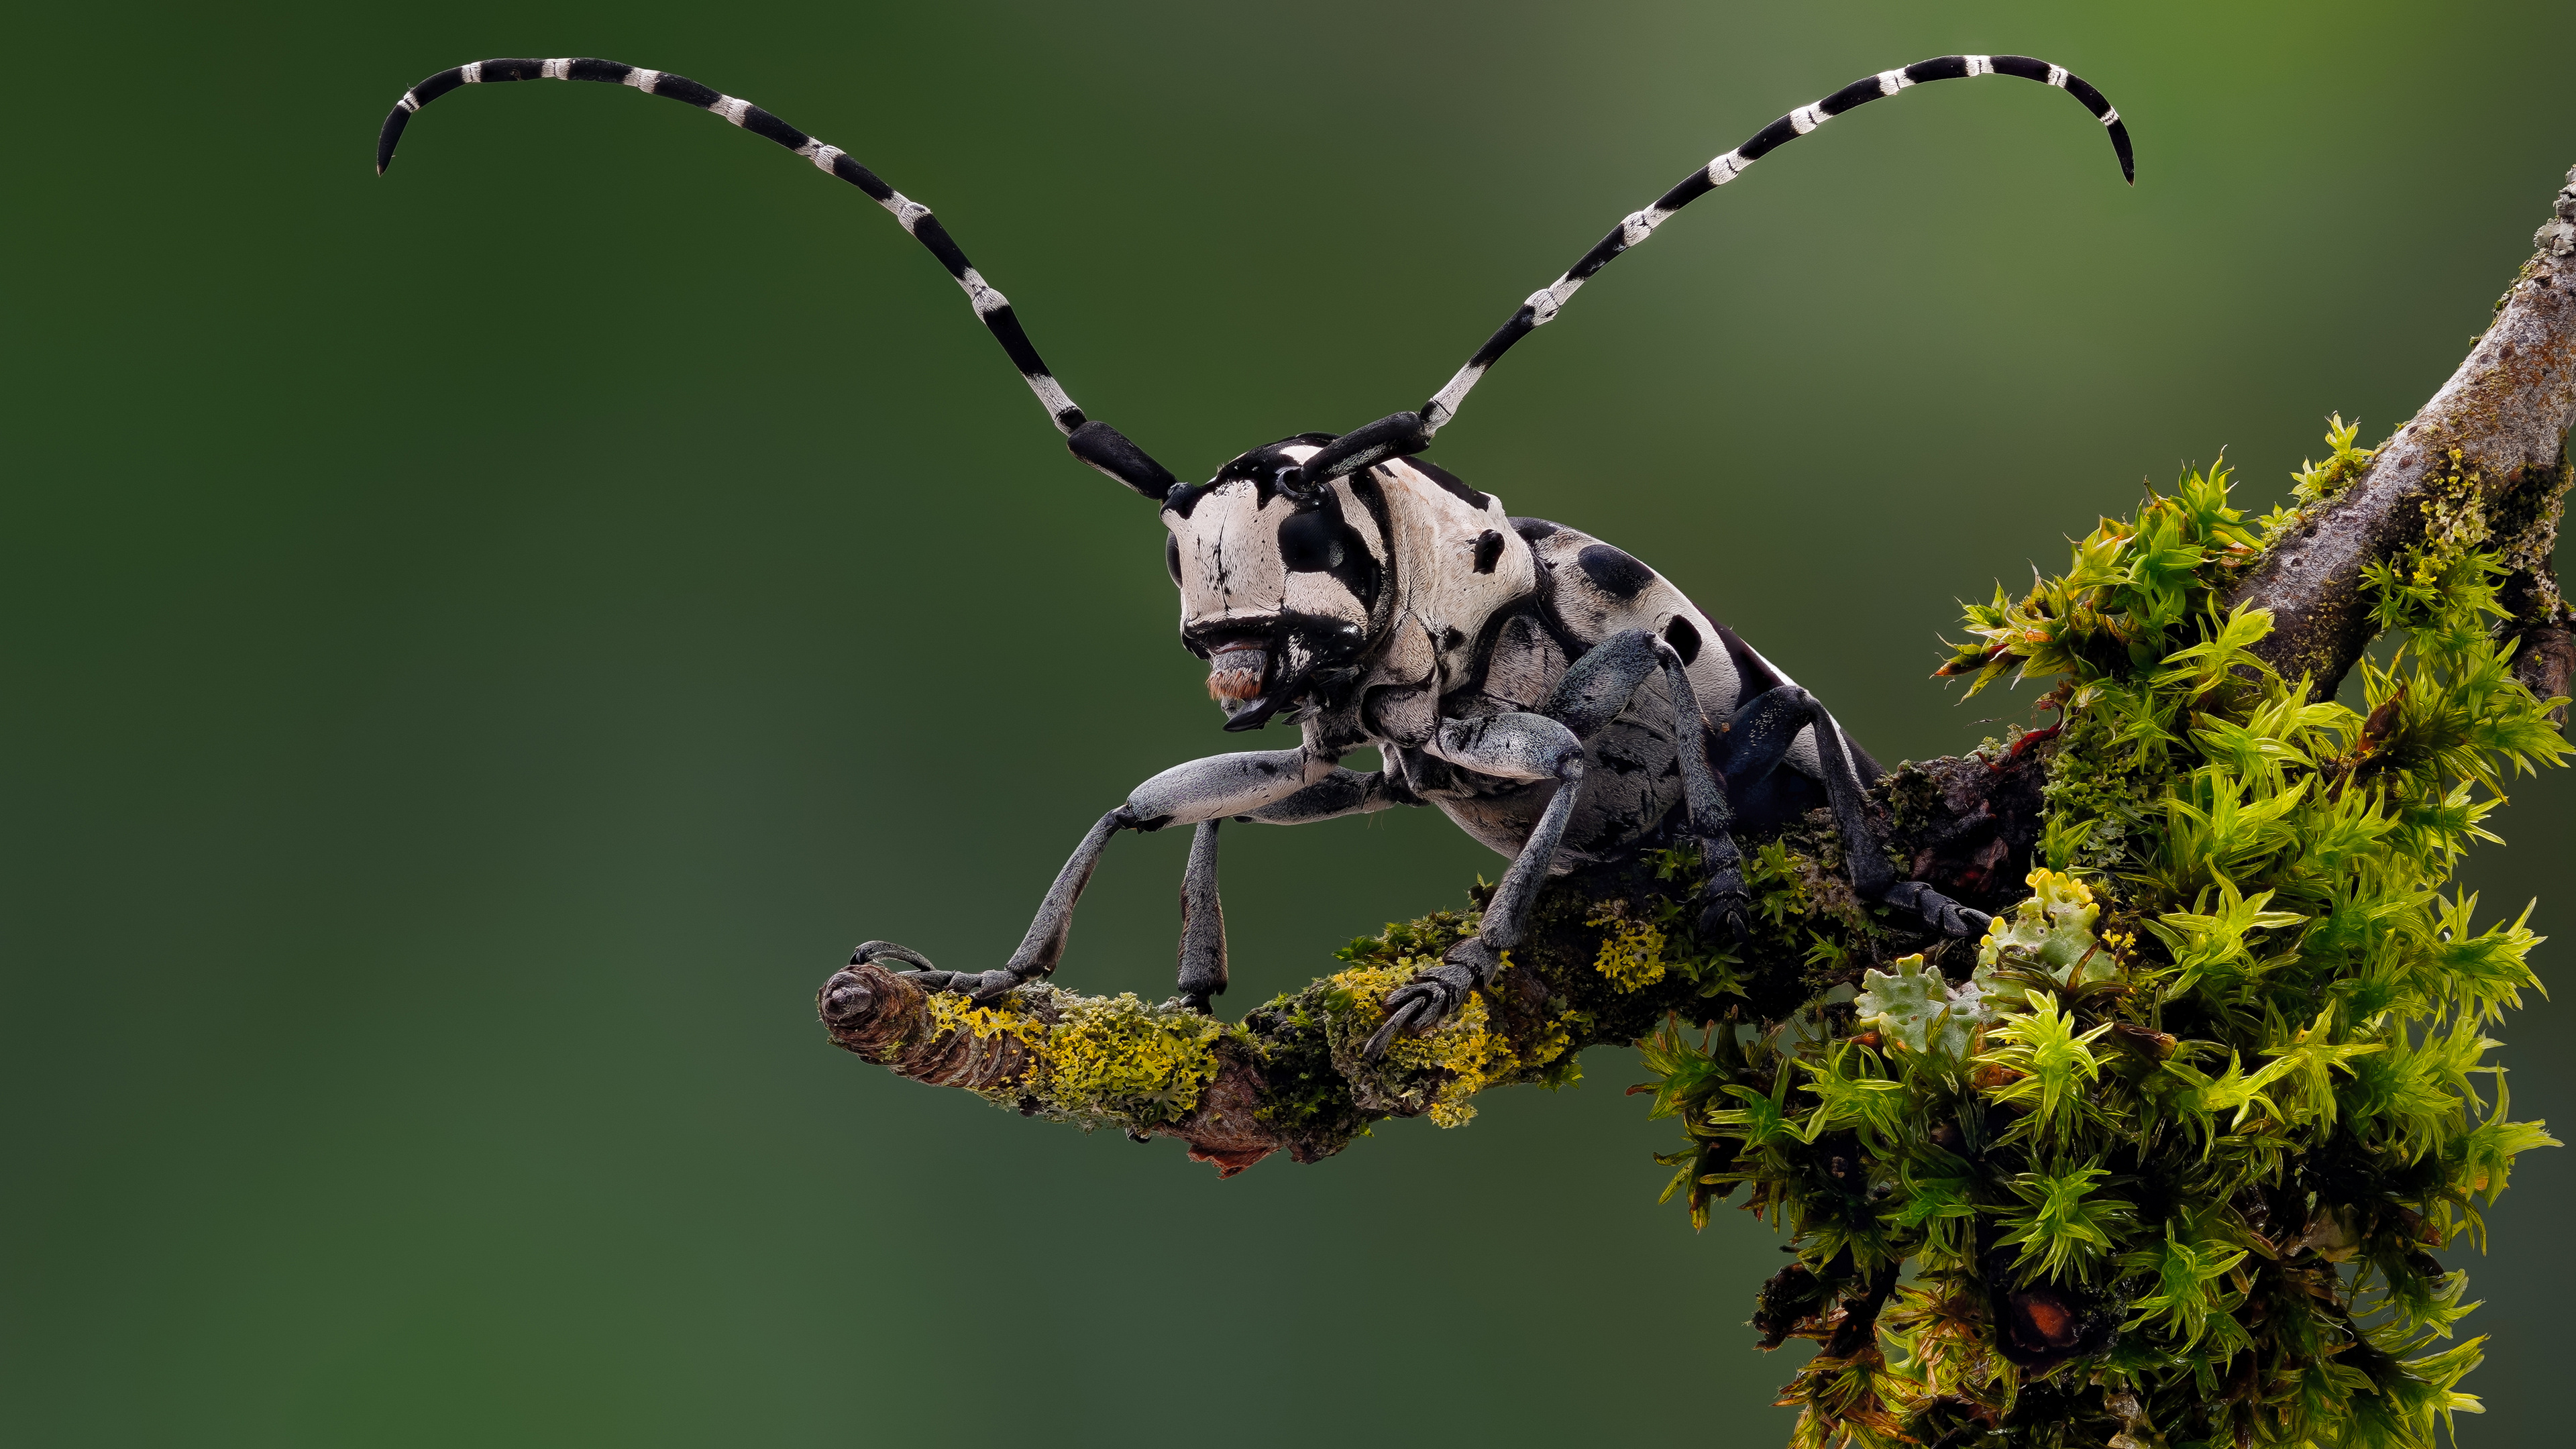 Close-up of a long-legged beetle